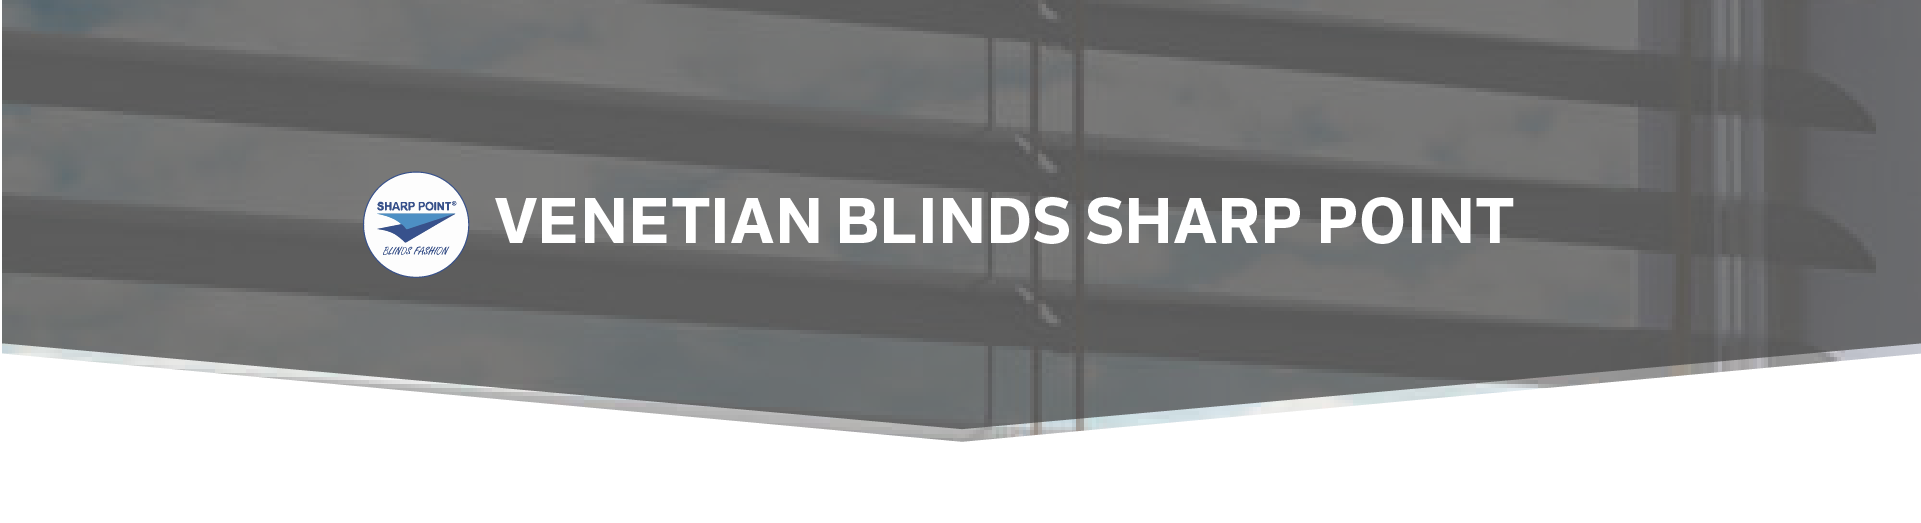 venetian blinds Sharp Point cover